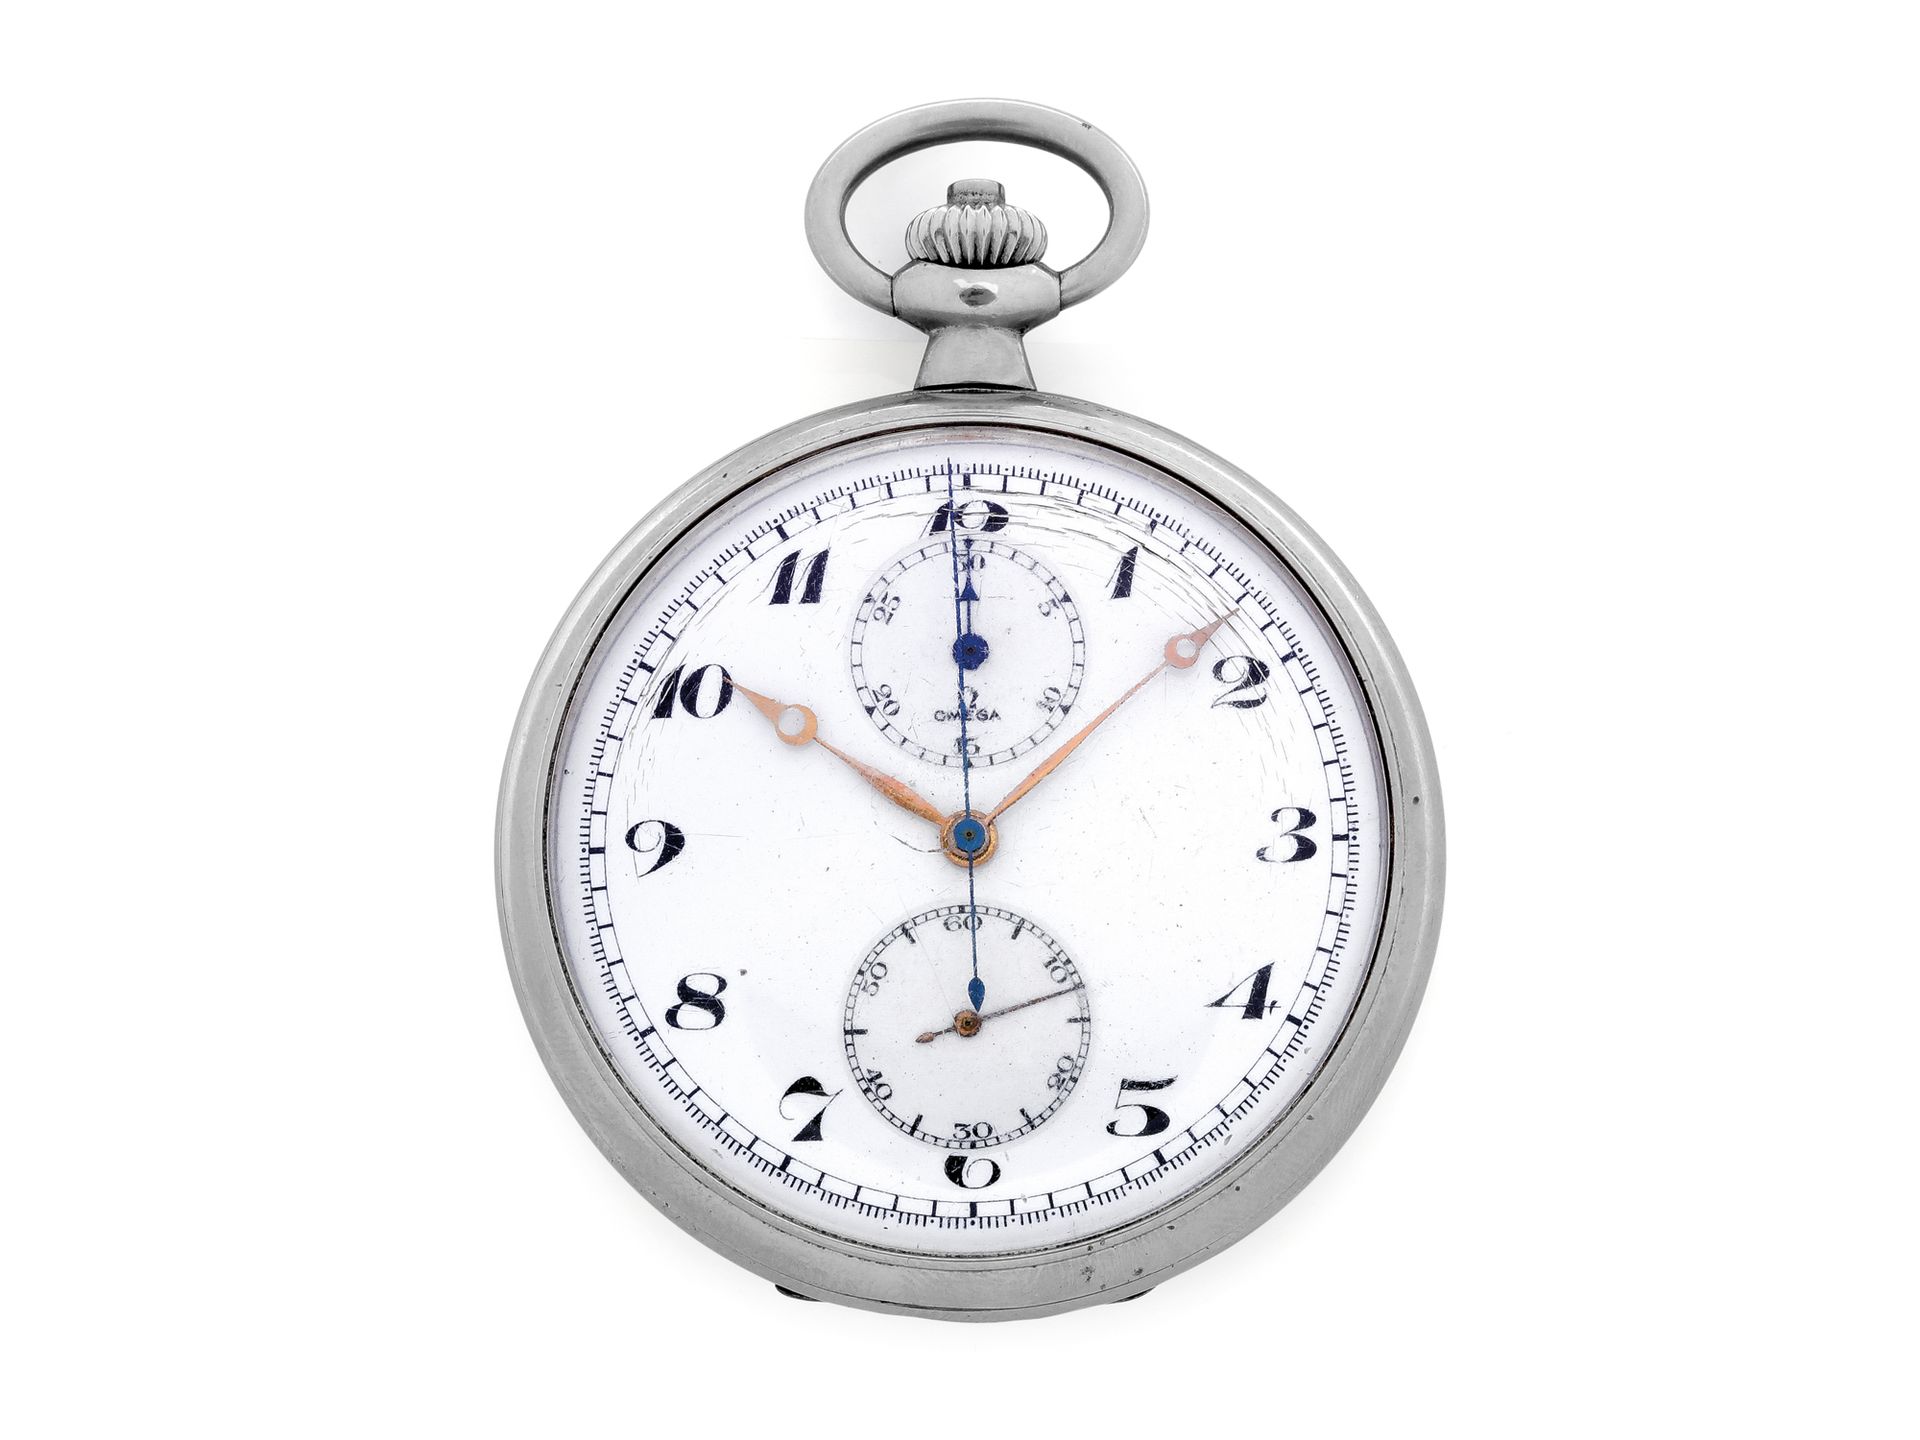 OMEGA Cronografo da tasca
Orologio cronografo da tasca in acciaio con movimento &hellip;